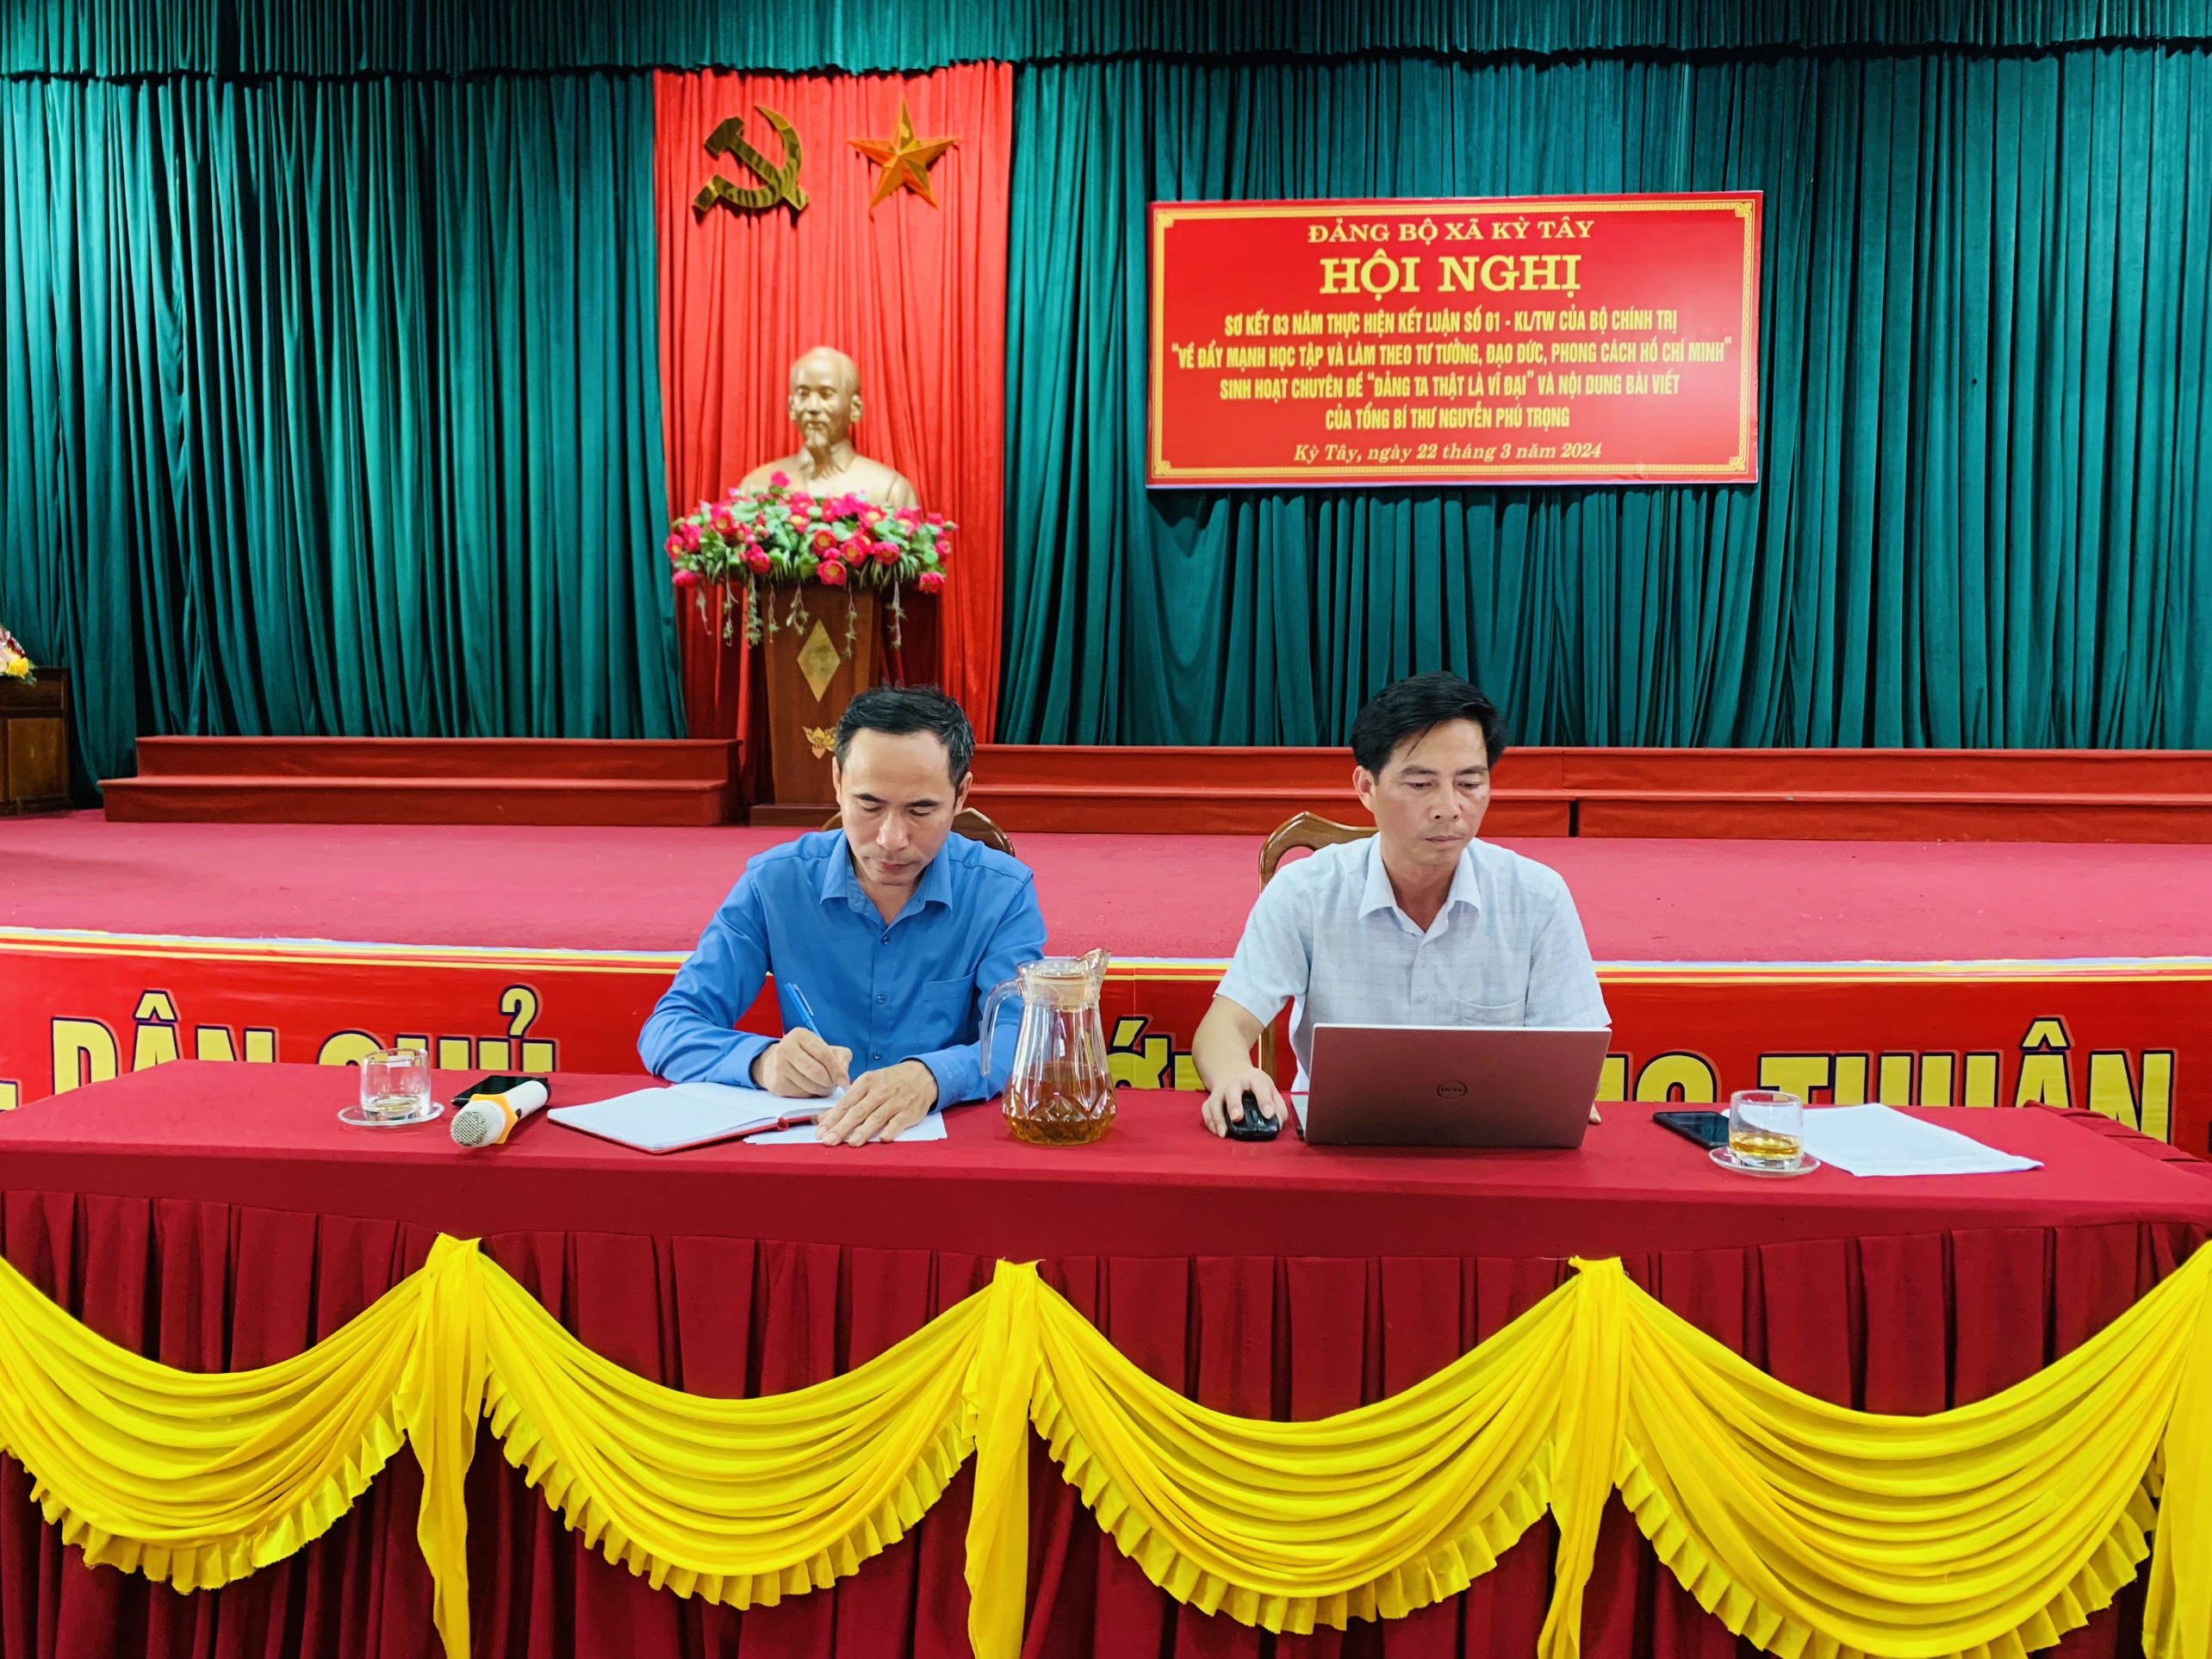 Đảng ủy xã Kỳ Tây tổ chức sơ kết 3 năm thực hiện Kết luận số 01-KL/TW, triển khai đợt sinh hoạt chính trị với nội dung bài viết của đồng chí Tổng Bí thư Nguyễn Phú Trọng.